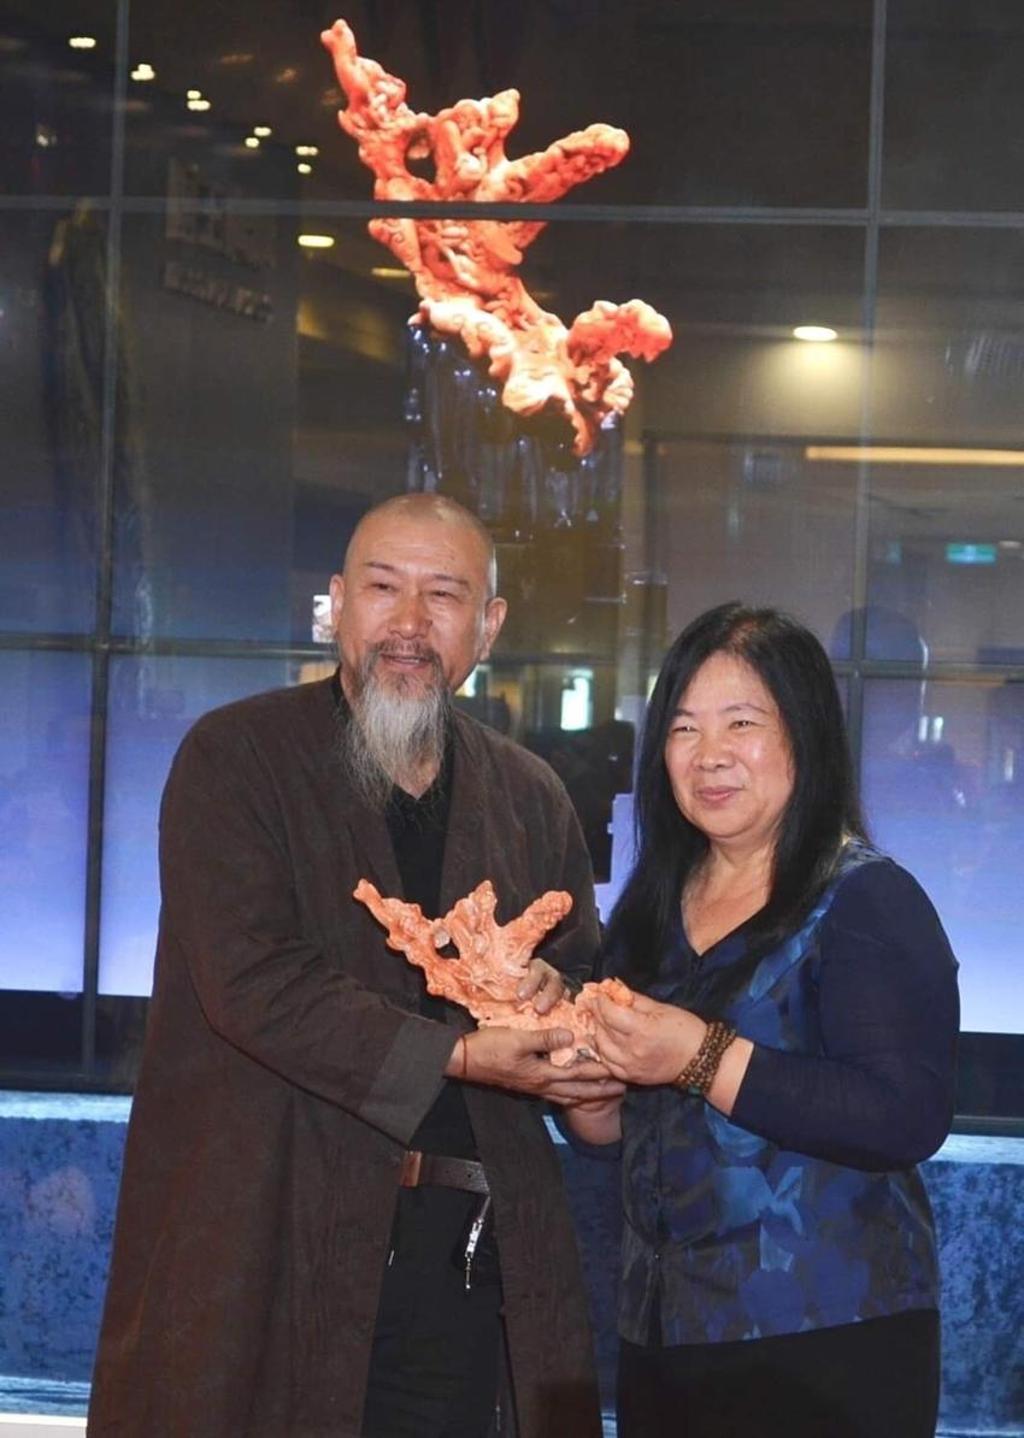 中國玉雕大師吳德昇(左)致贈珊瑚雕作品「和諧」給綺麗珊瑚博物館，由董事長洪明麗(右)代表接受。圖:綺麗珊瑚提供